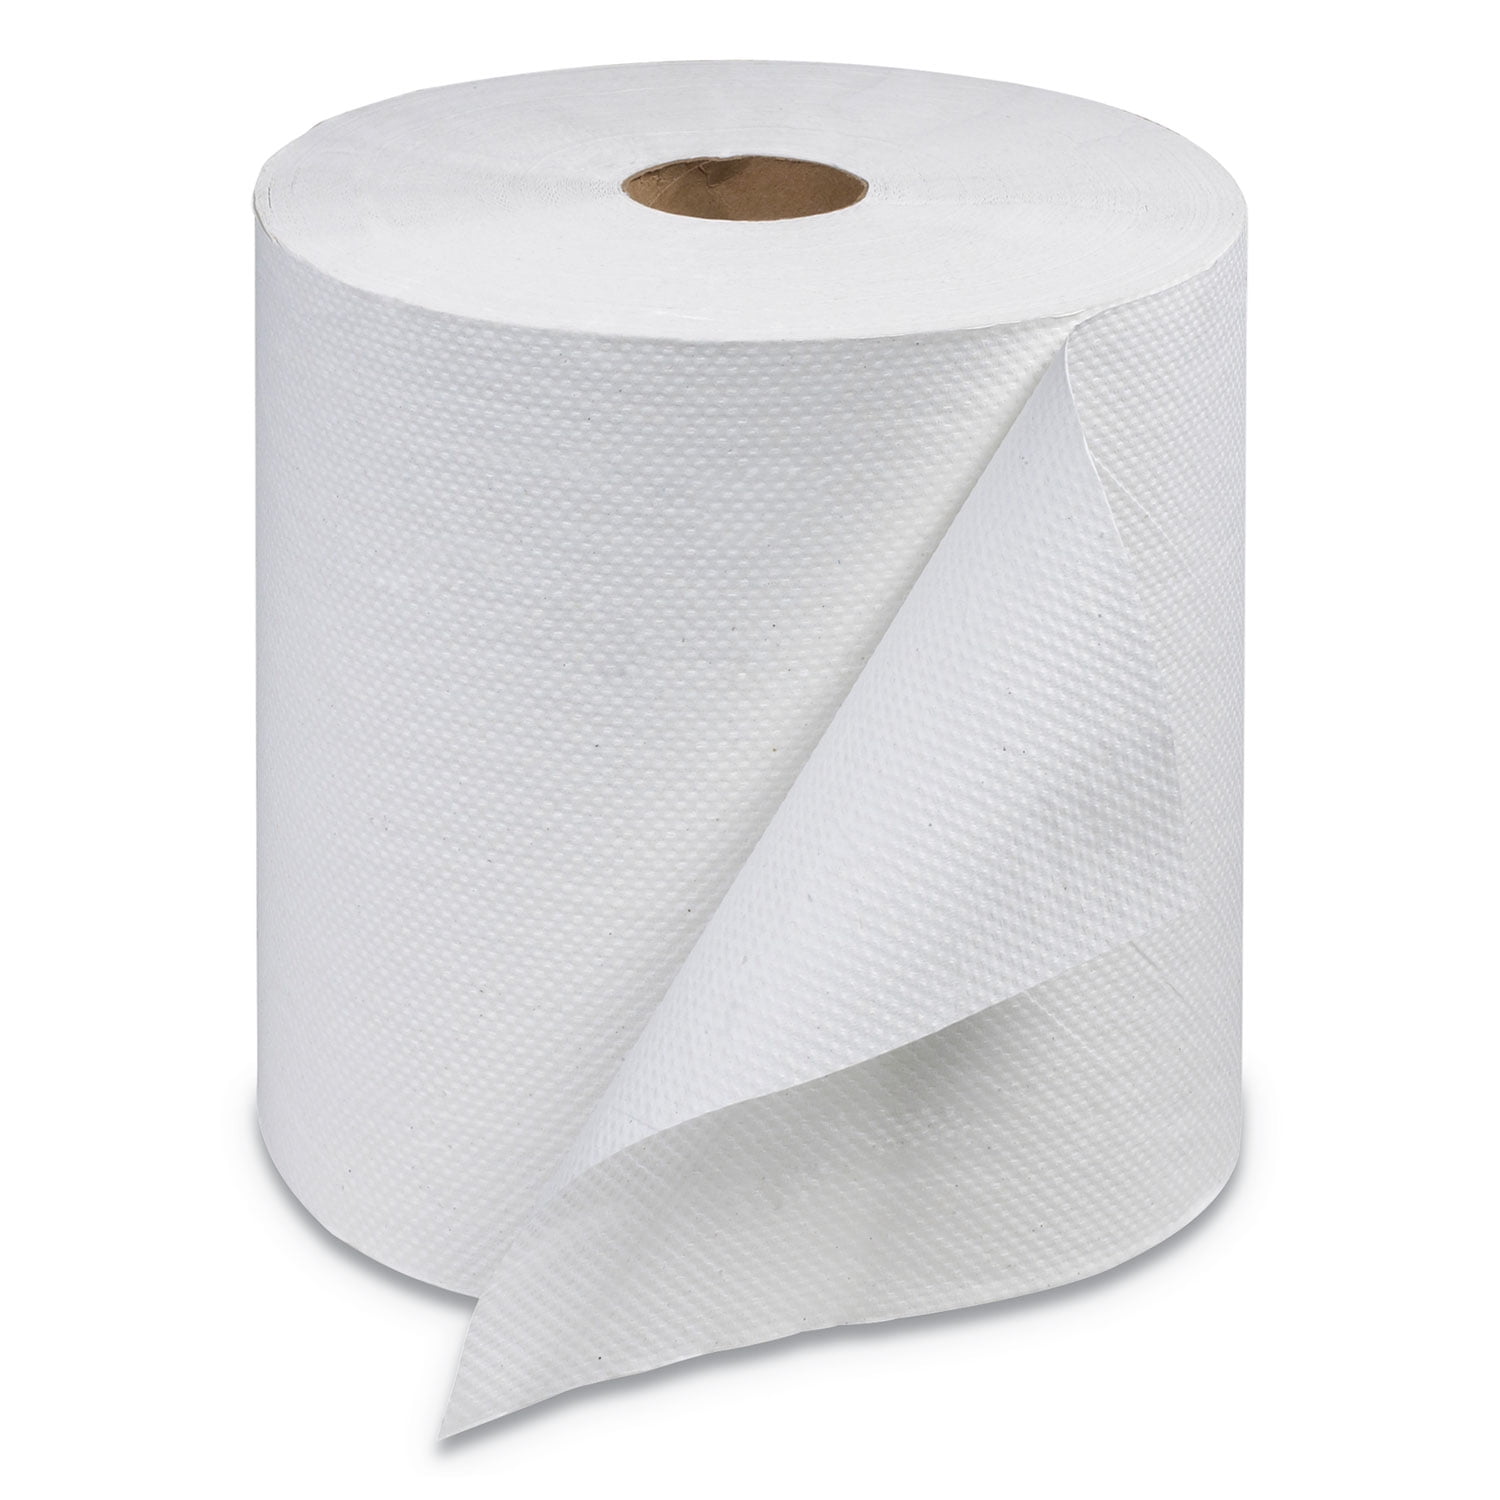 Brown Paper Towels Roll 7-7/8W x 800'L, 6 Rolls